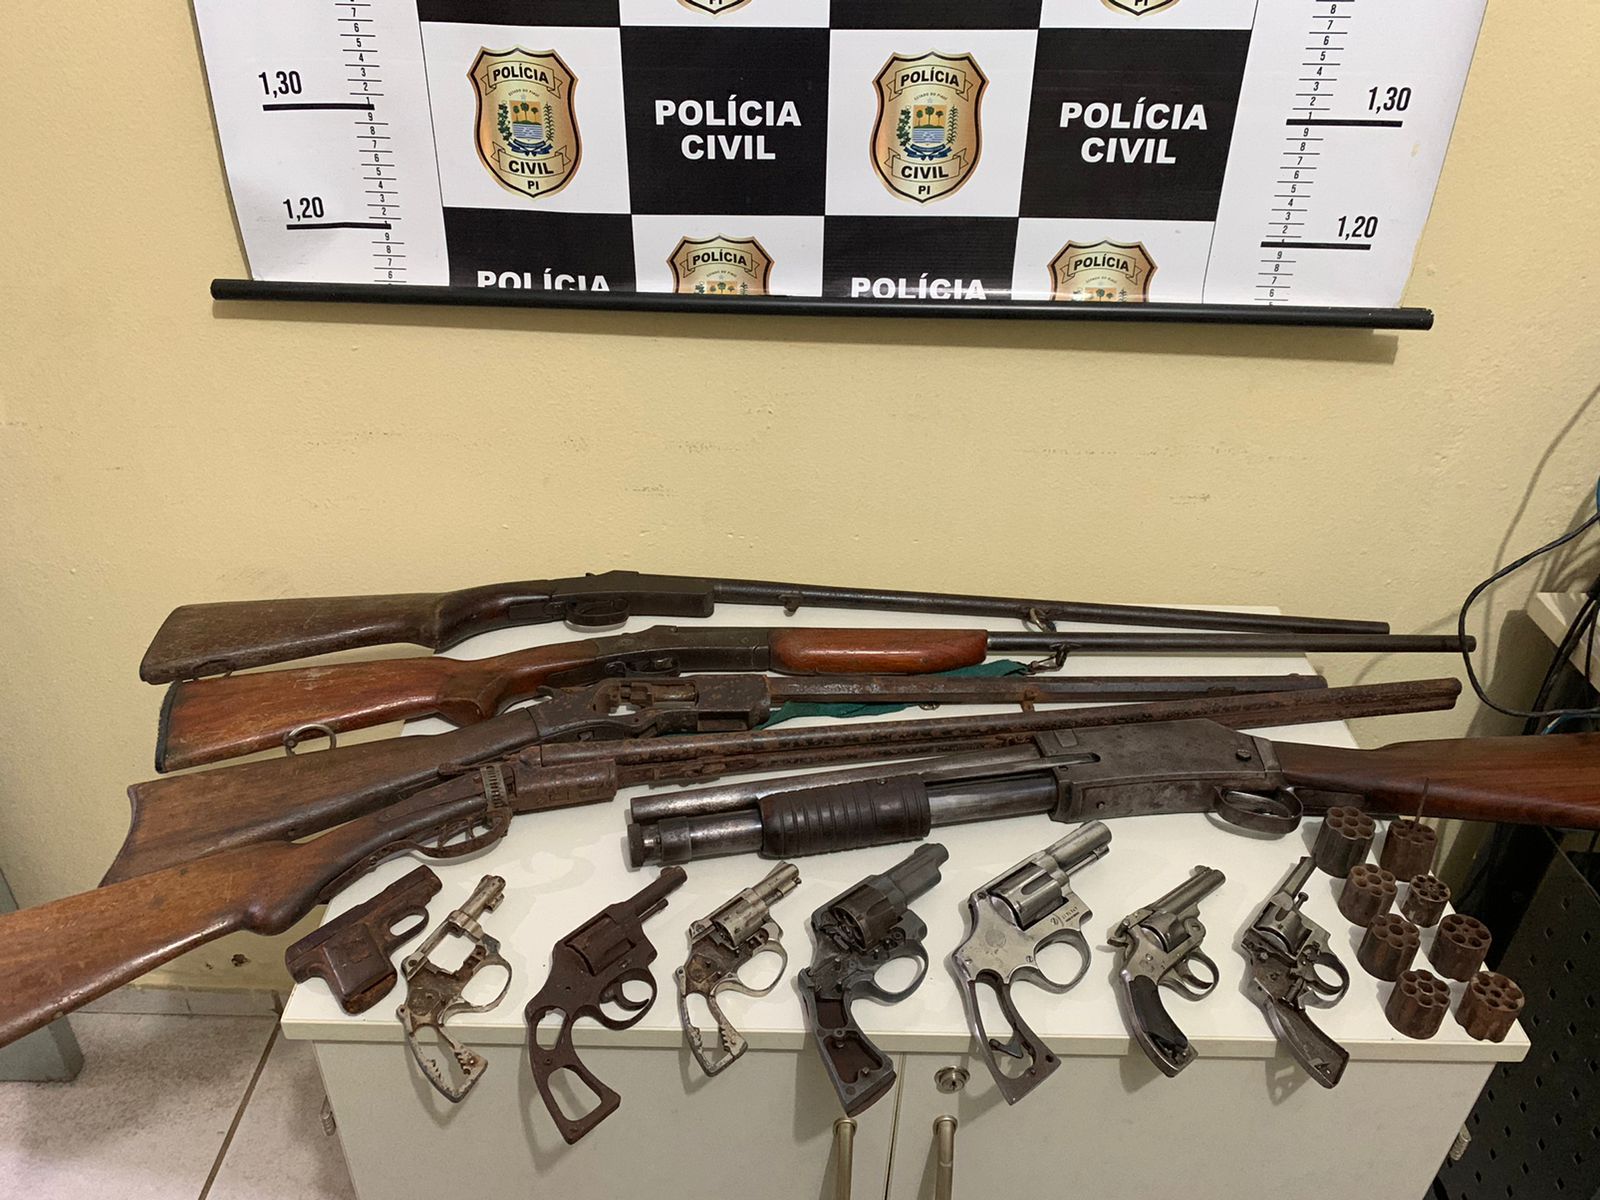 13 armas de fogo são apreendidas em residência na cidade de Picos